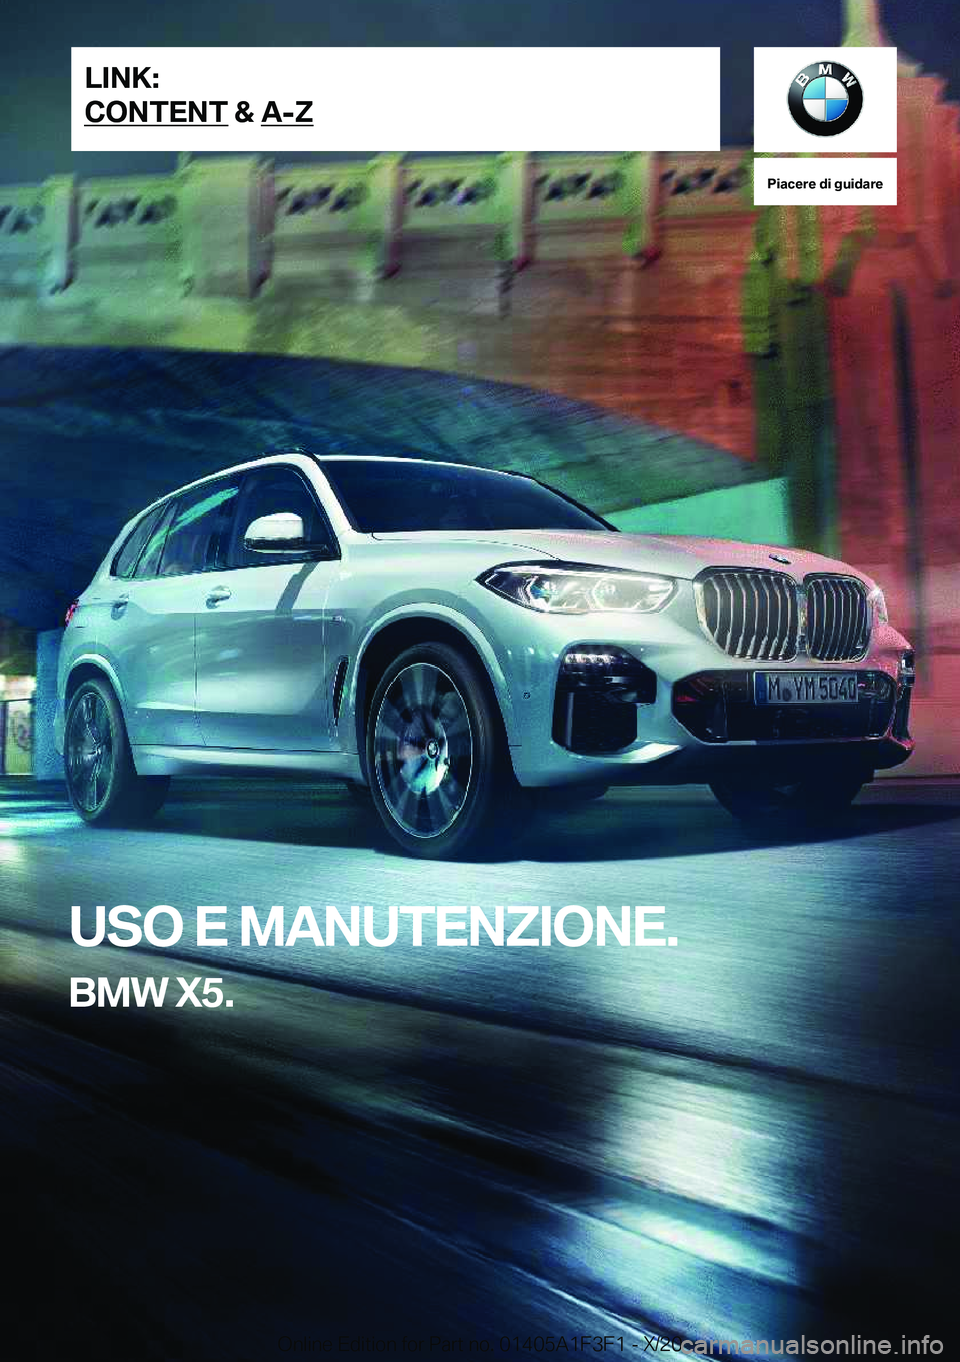 BMW X5 2021  Libretti Di Uso E manutenzione (in Italian) �P�i�a�c�e�r�e��d�i��g�u�i�d�a�r�e
�U�S�O��E��M�A�N�U�T�E�N�Z�I�O�N�E�.
�B�M�W��X�5�.�L�I�N�K�:
�C�O�N�T�E�N�T��&��A�-�Z�O�n�l�i�n�e��E�d�i�t�i�o�n��f�o�r��P�a�r�t��n�o�.��0�1�4�0�5�A�1�F�